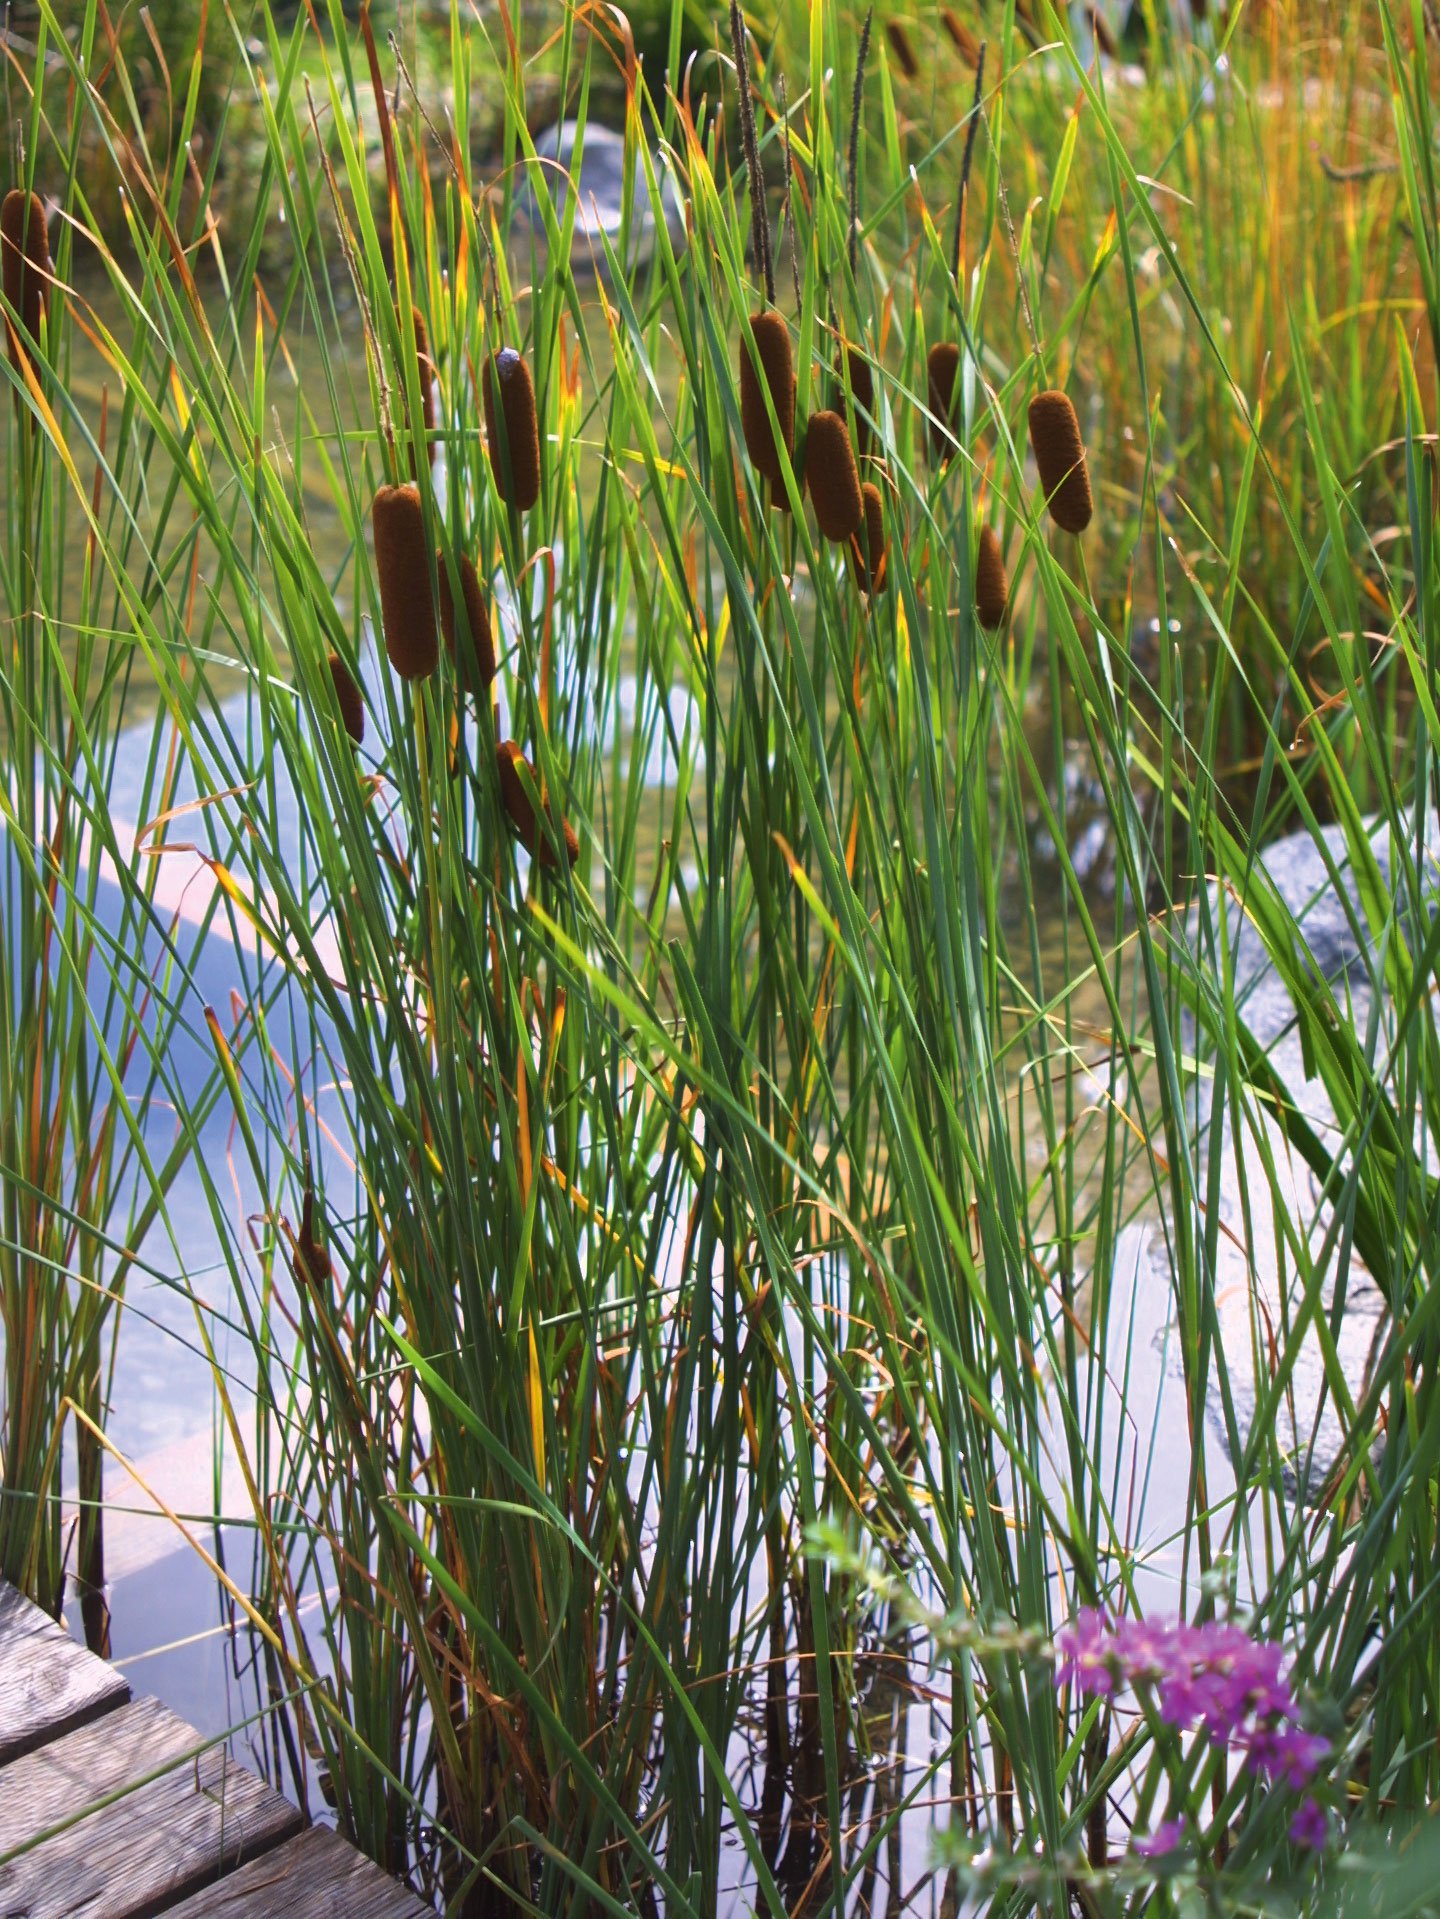 Bioreinigungskraft: Der Schmalblättrige Rohrkolben ist eine Sumpfpflanze, die wasser-klärend wirkt. Er hält das biologische Gleichgewicht in Gewässern aufrecht. praskac.at